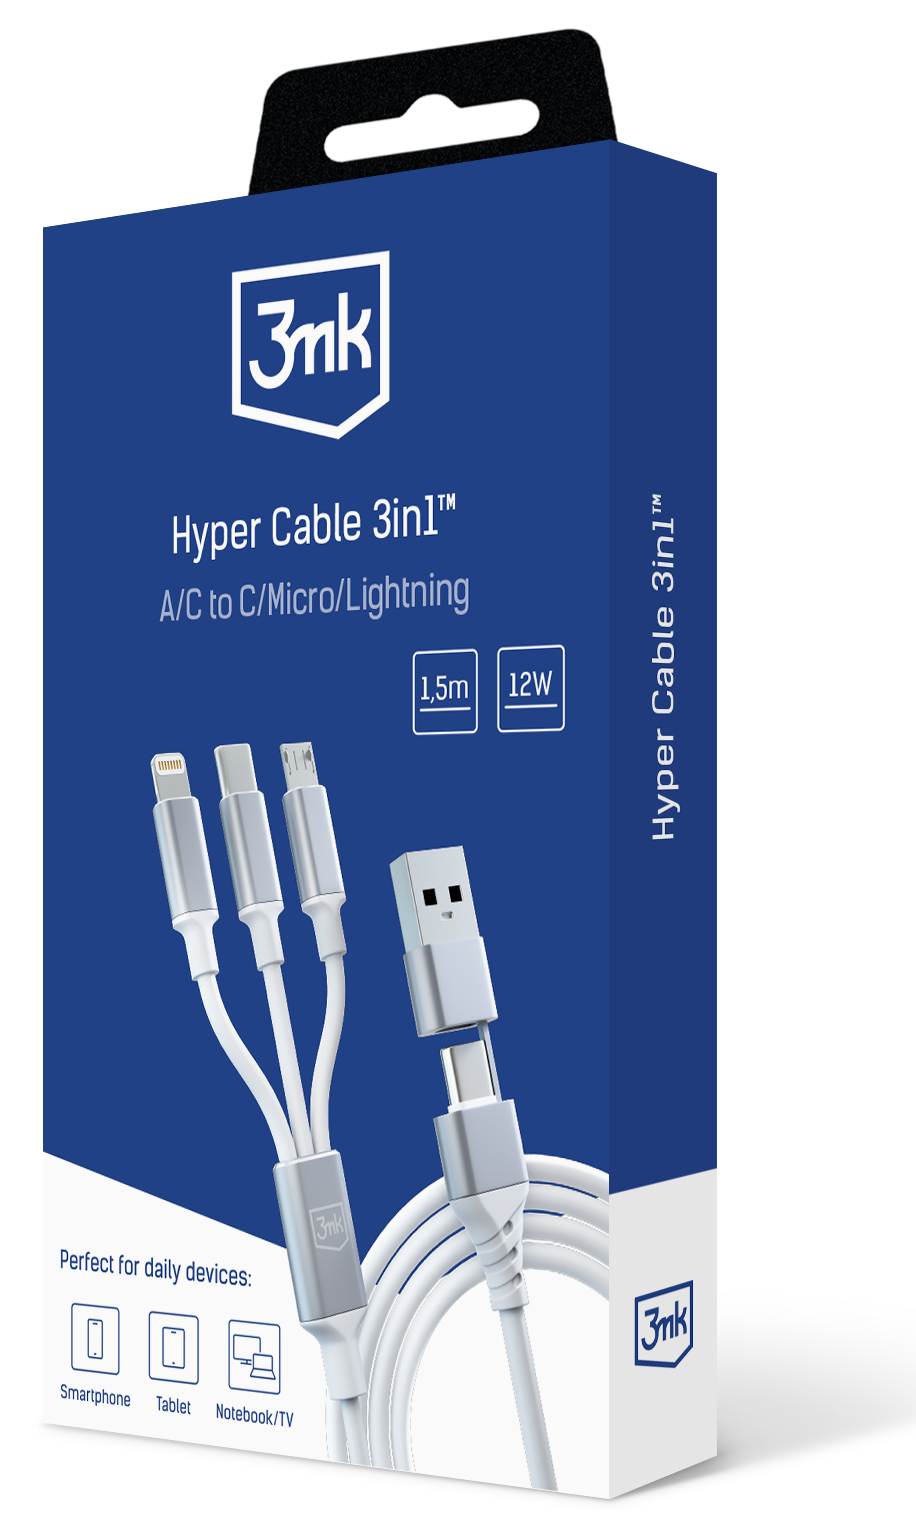 3mk-hyper-cable-3in1_white-packshot-b